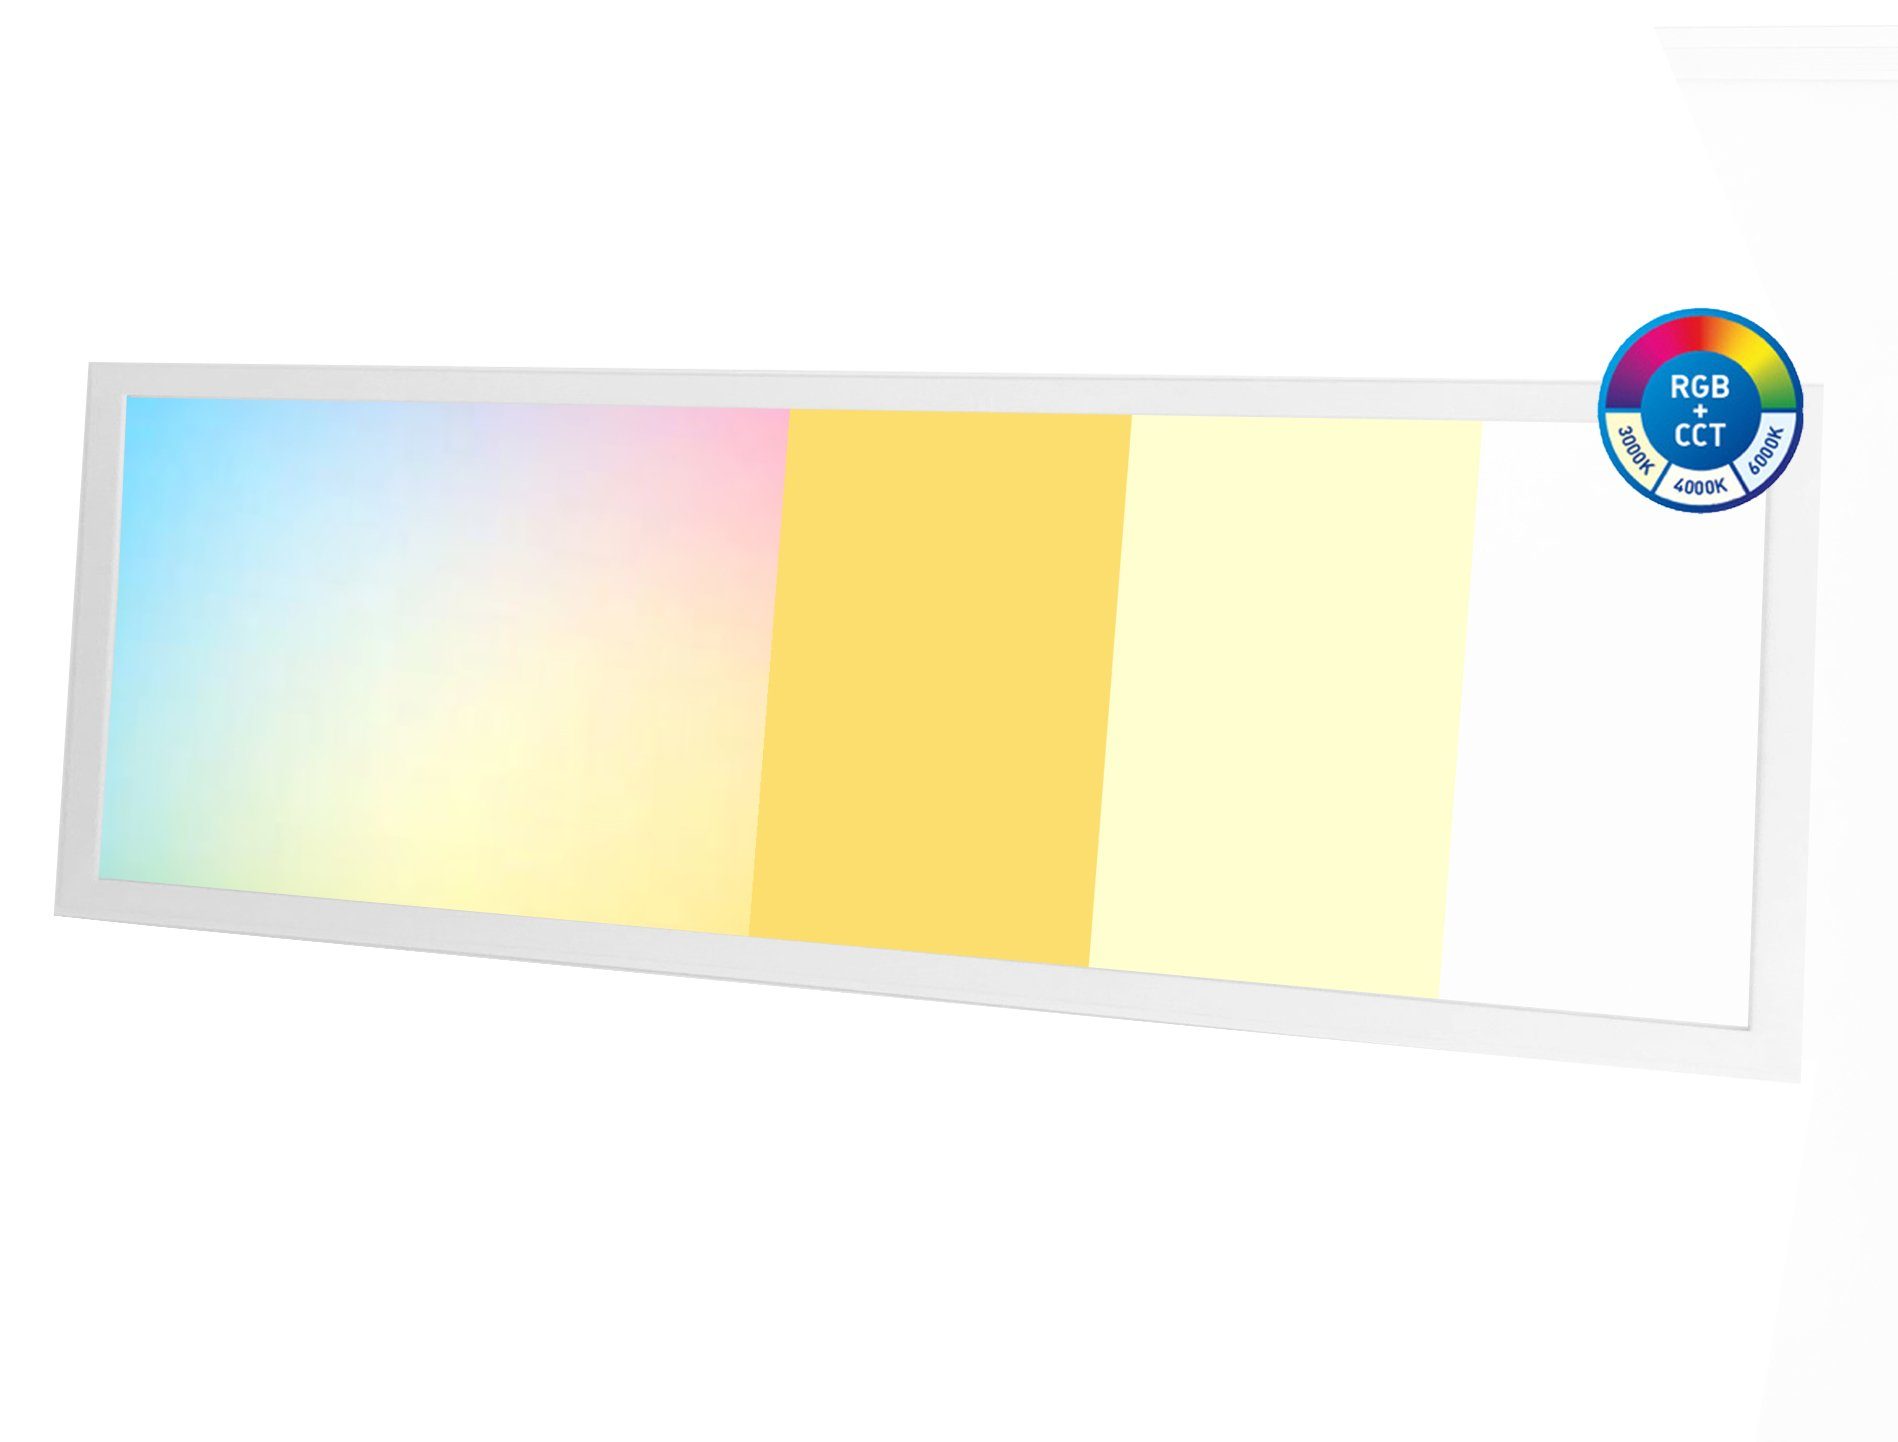 Lecom LED Panel 120x30-RGB+CCT LED Panel Deckenleuchte Farbig, LED fest  integriert, RGB und Weißer Farben Farbtemperatur verstellbar, Farbwechsler  dimmbar mit Fernbedienung, Lichtfarbe: RGB+CCT Kelvin-Wert 2700K - 65000K,  Lichtkraft 3200 Lumen